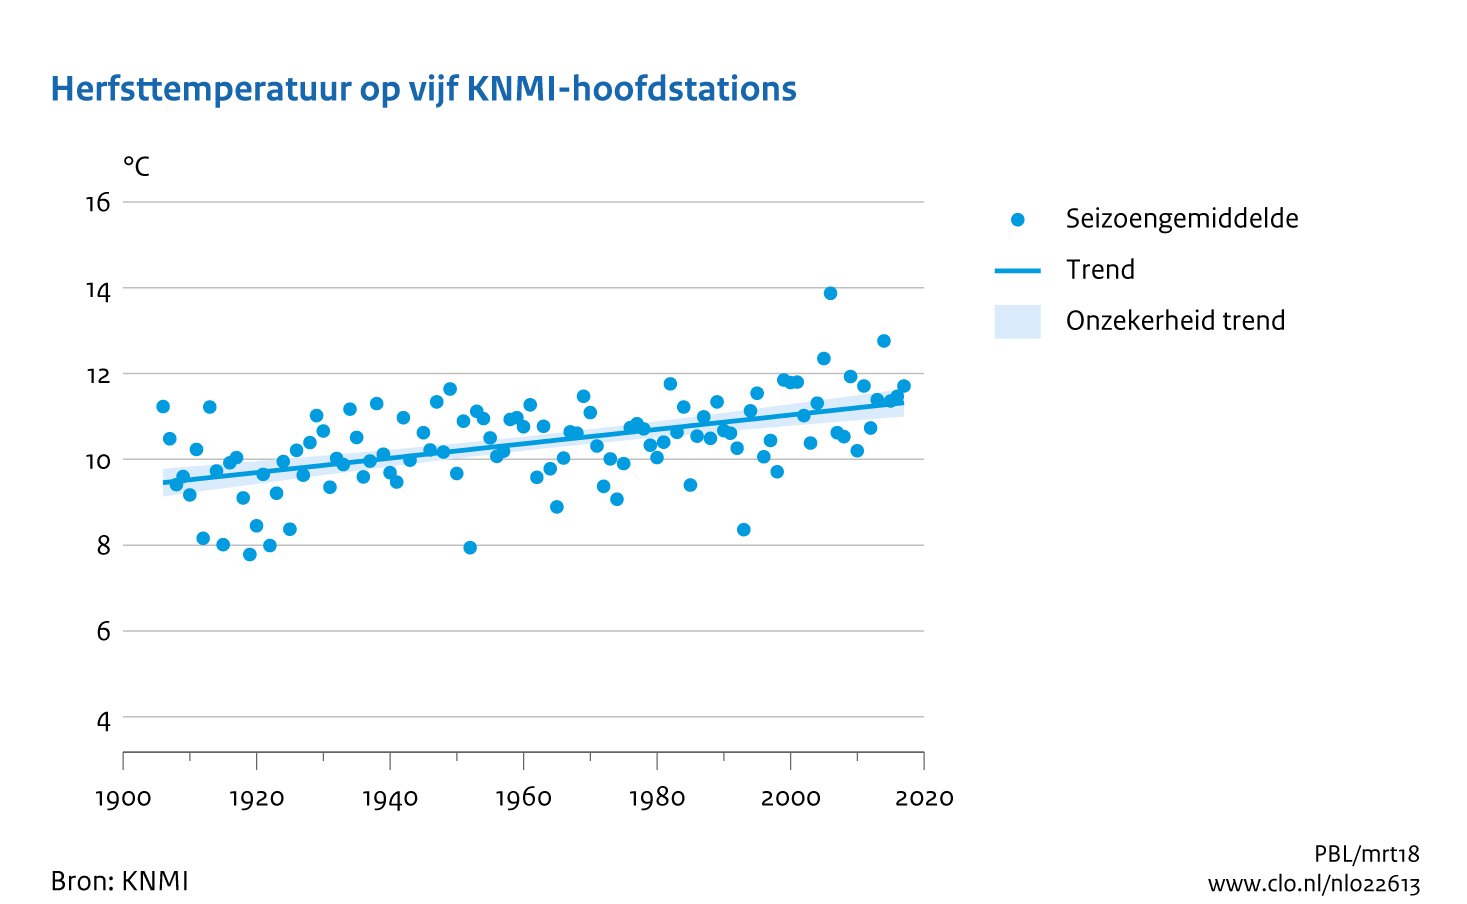 Figuur herfsttemperatuur op 5 KNMI -hoofdstations  Nederland. In de rest van de tekst wordt deze figuur uitgebreider uitgelegd.